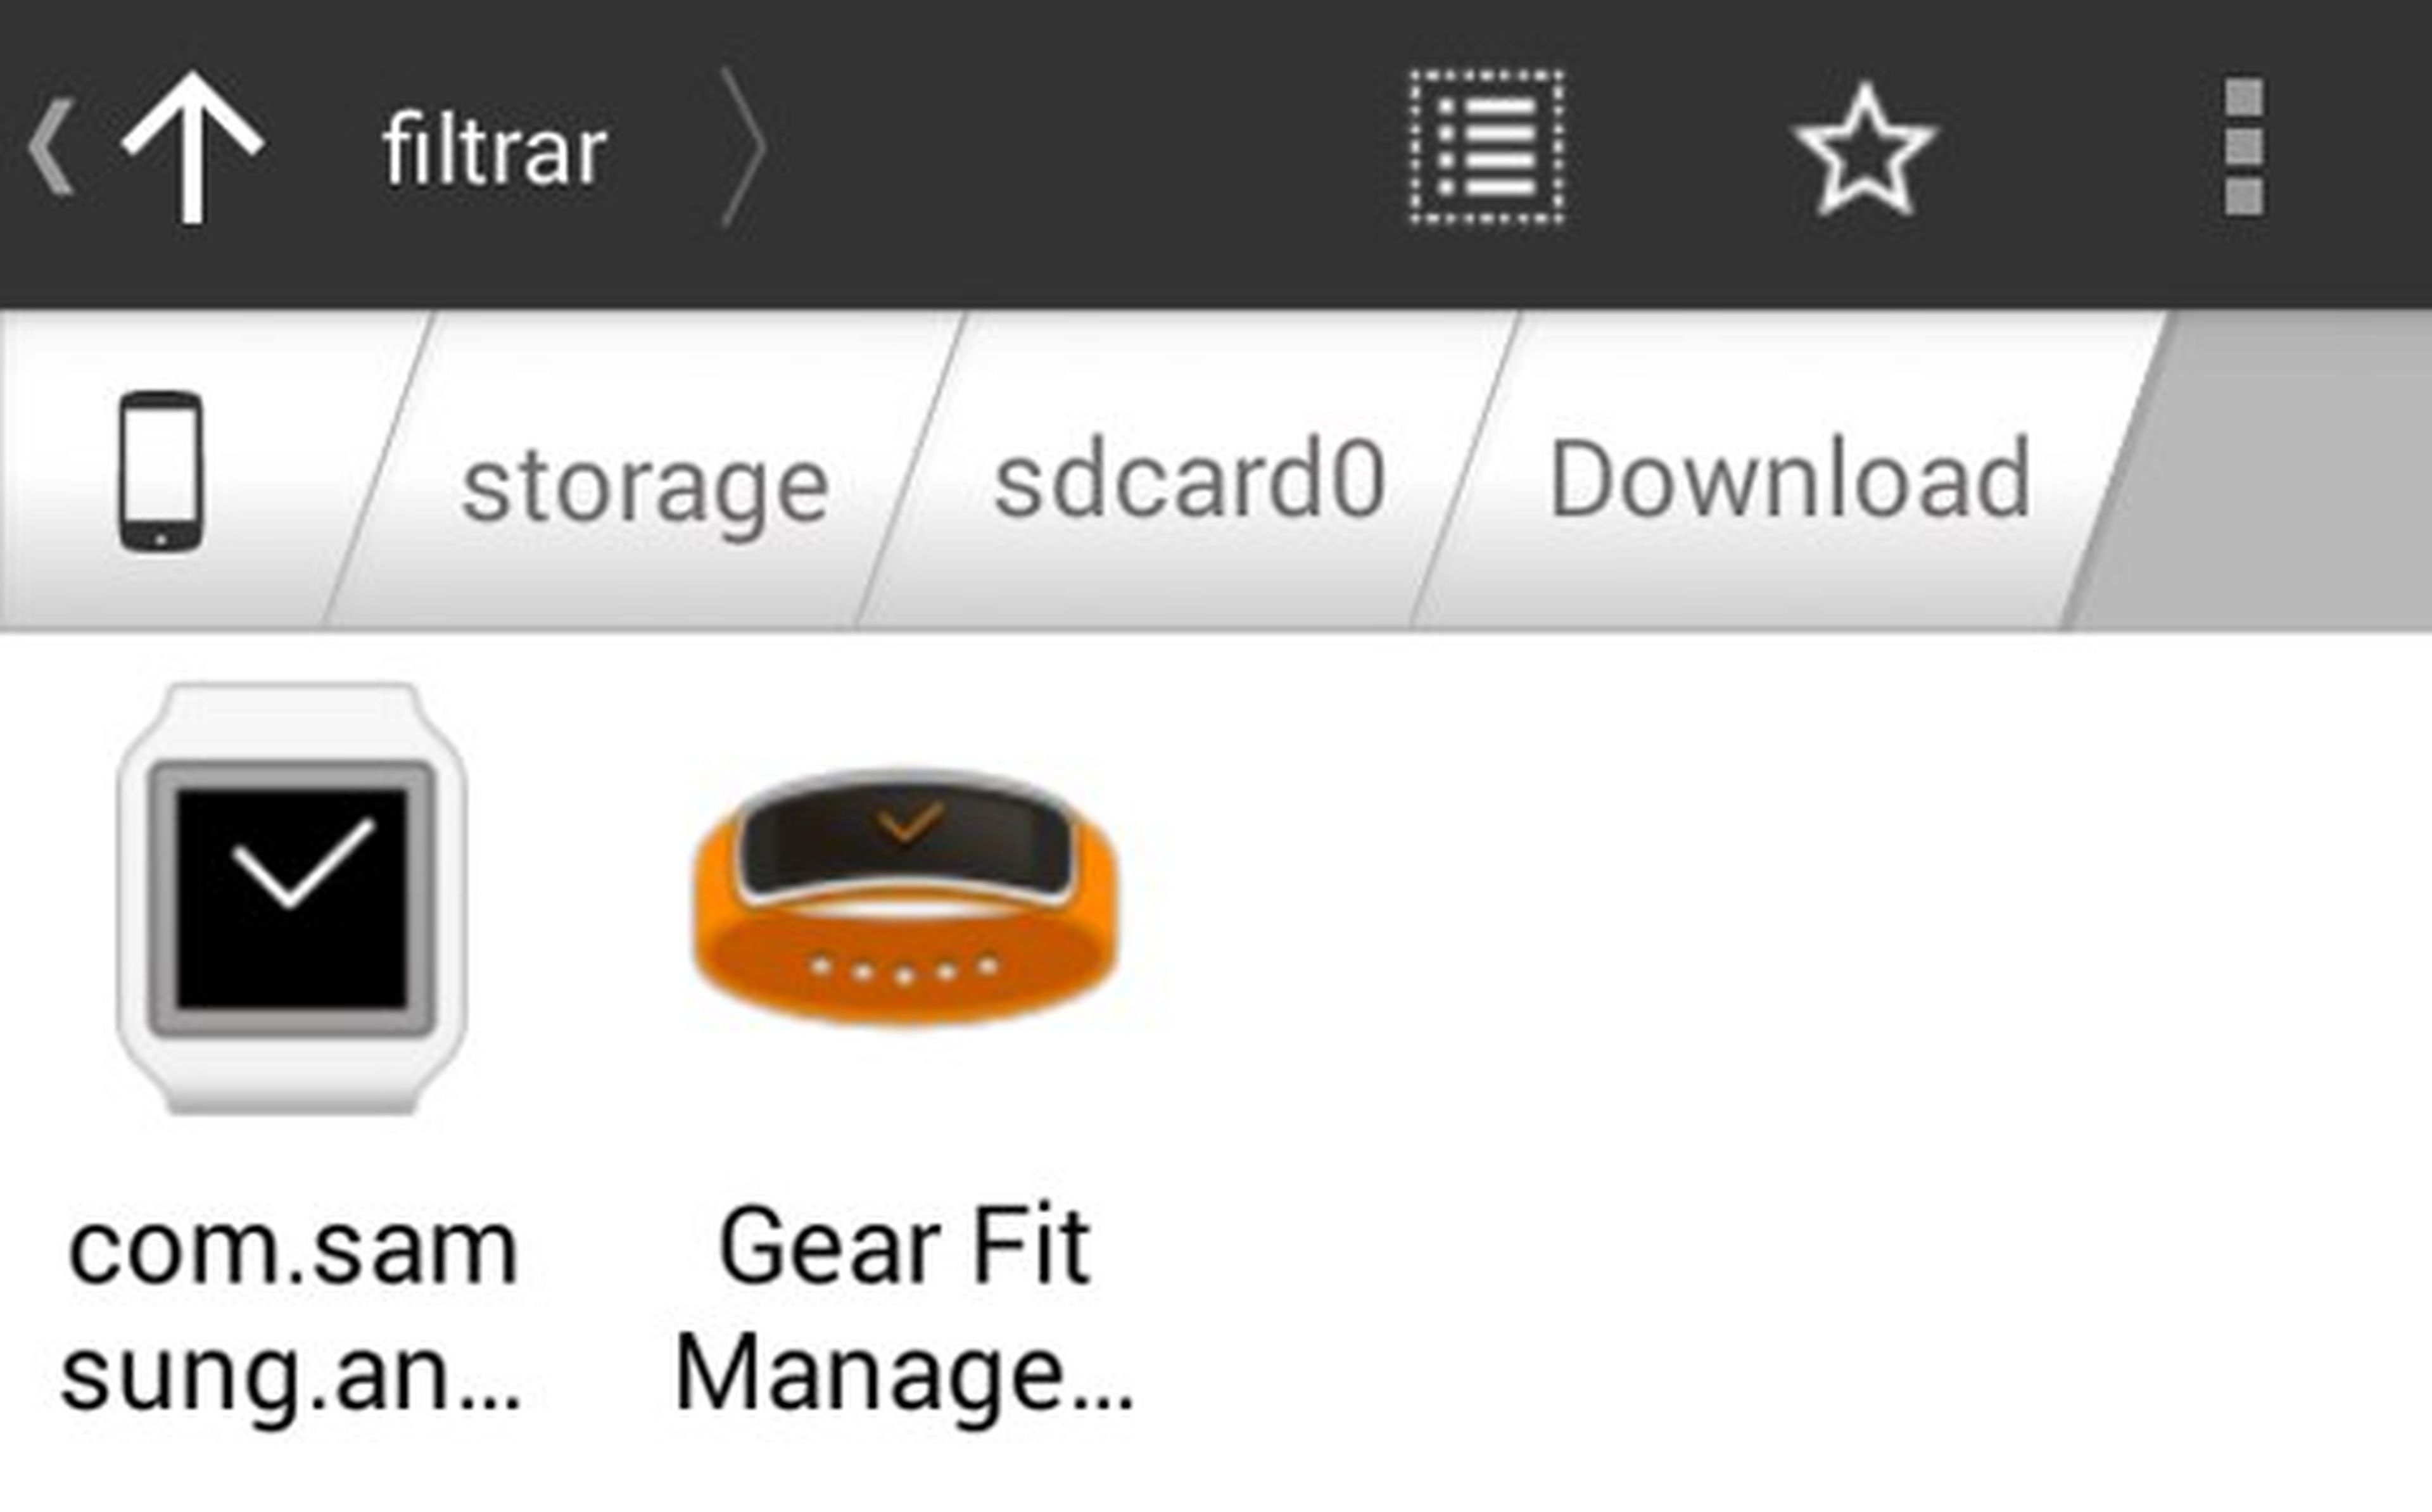 Sincroniza tu Gear Fit o Gear 2 con dispositivos no Samsung